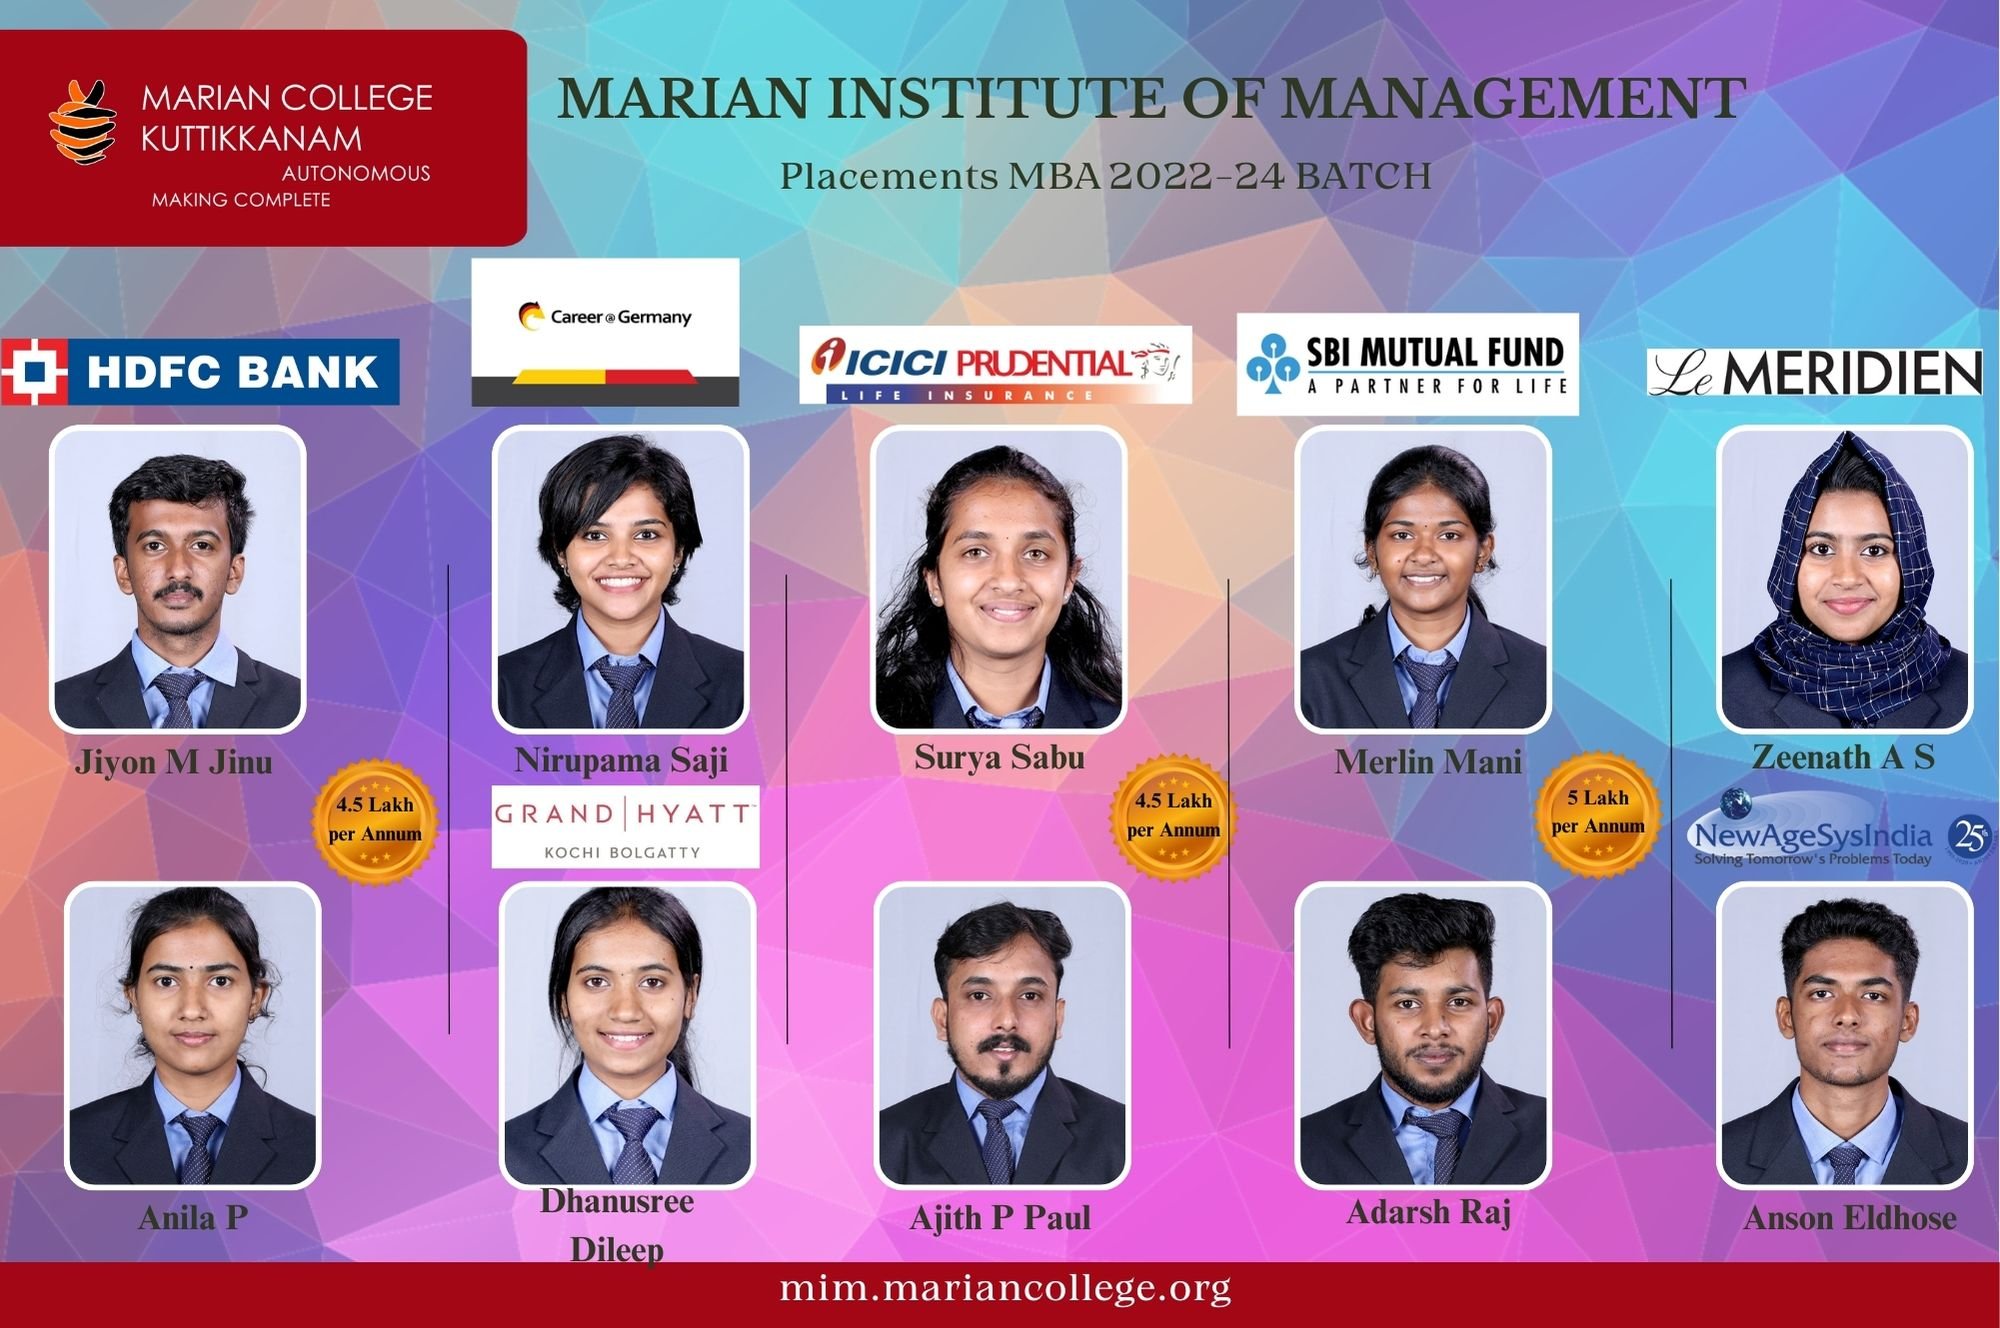 Marian Institute of Management